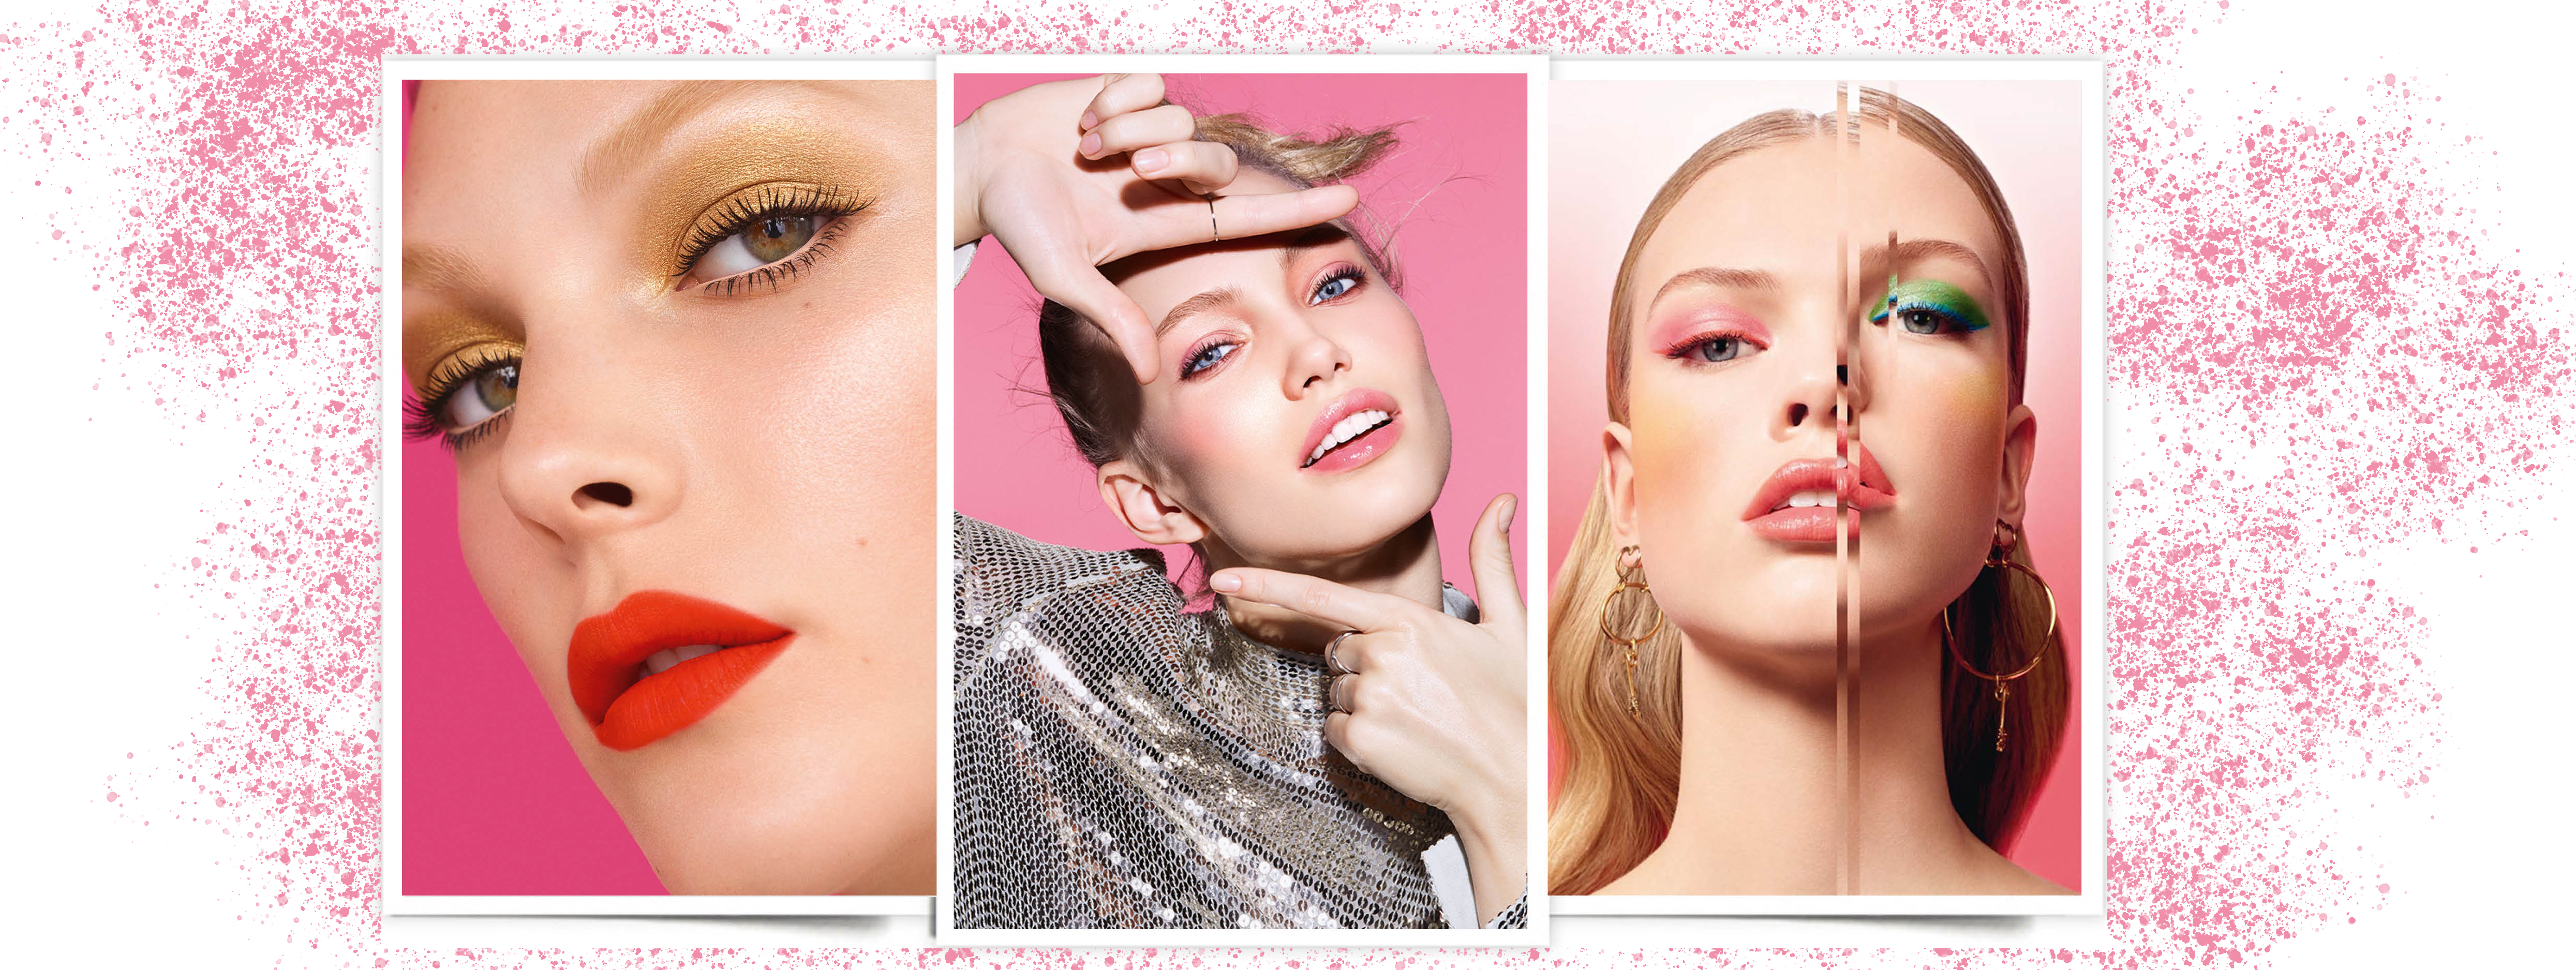 Colecciones de maquillaje de primavera 2019: Chanel, Clarins y Givenchy